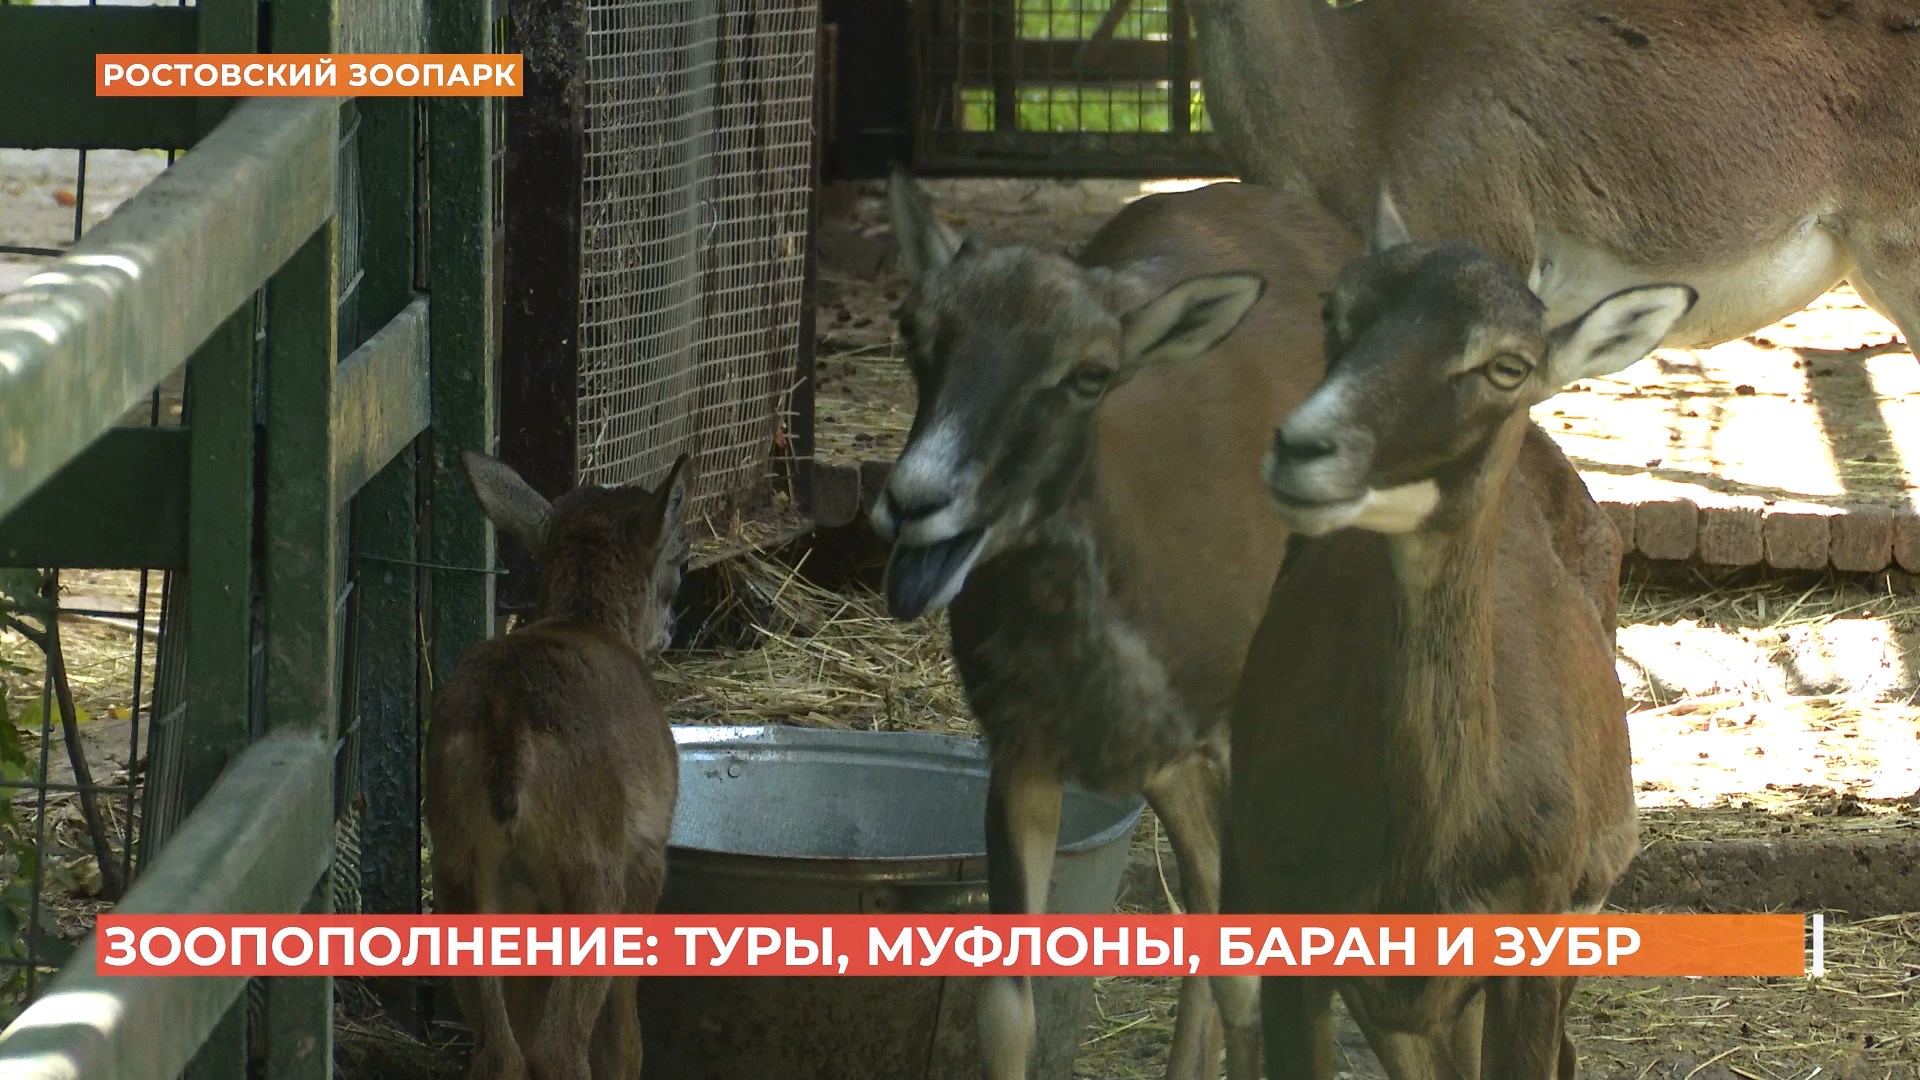 В Ростовском зоопарке настоящий бейби-бум копытных